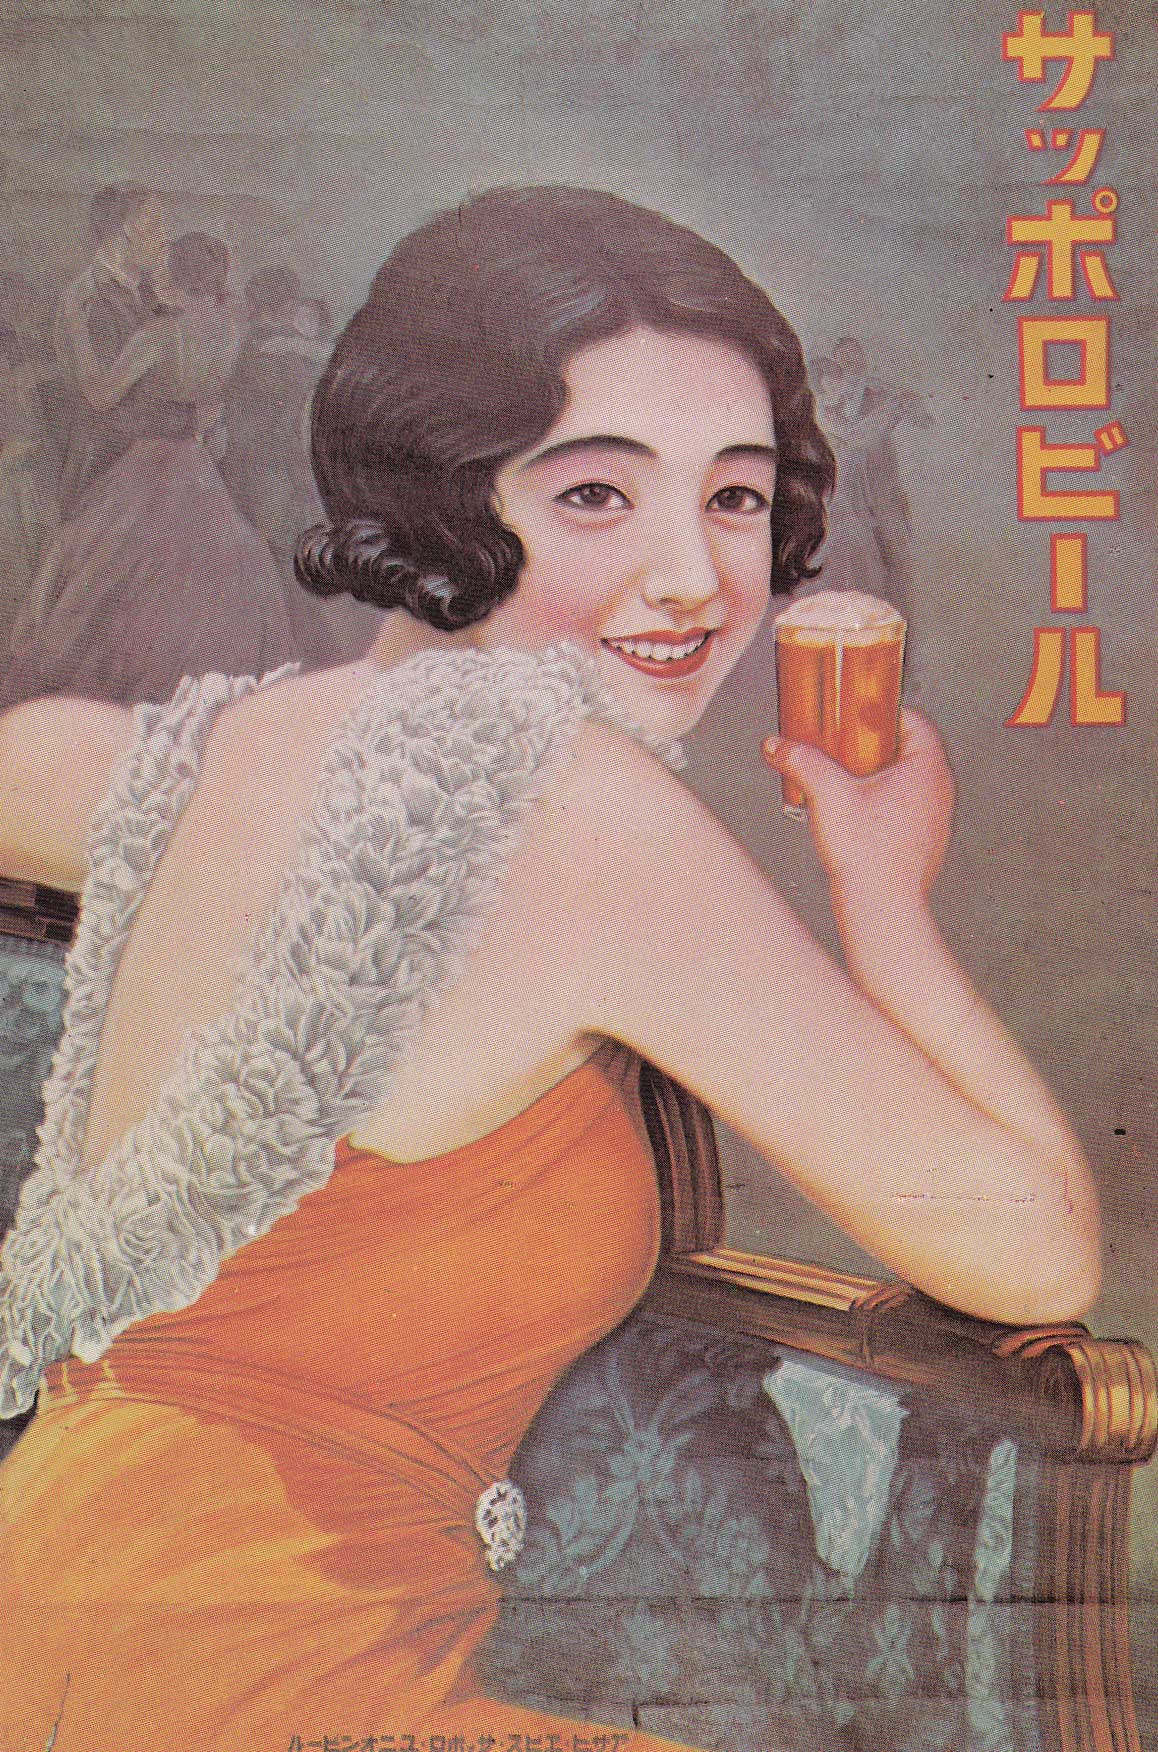 Japanese Beer Adverts